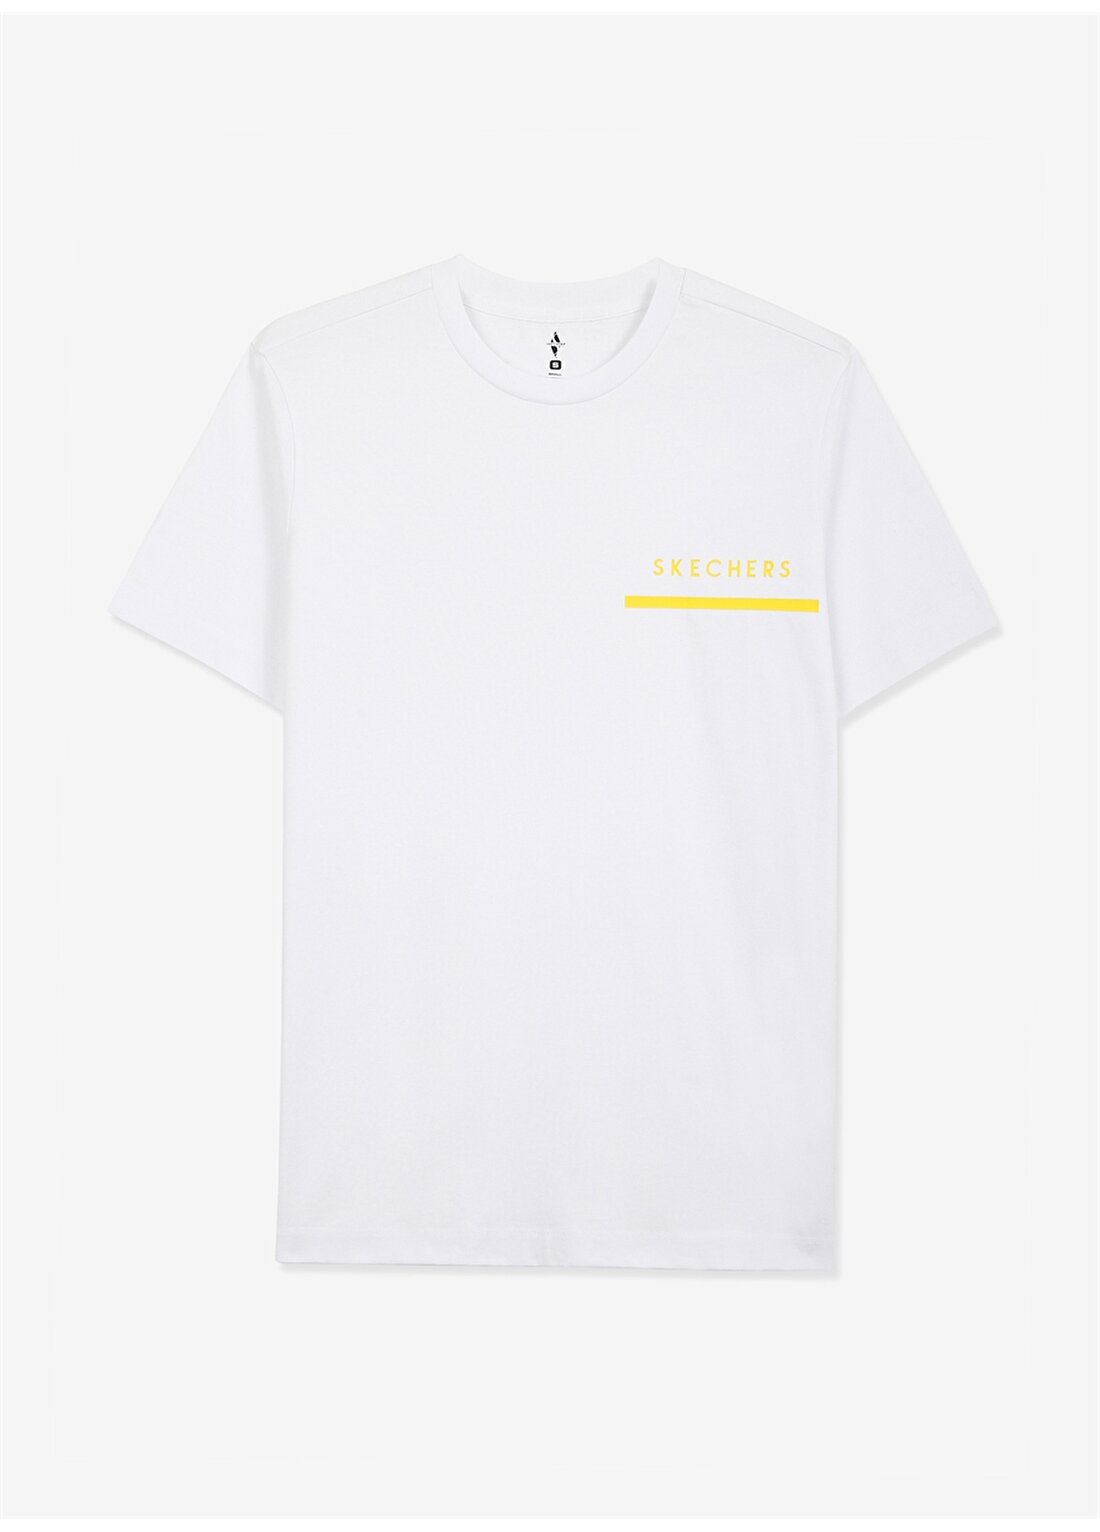 Skechers Yuvarlak Yaka Düz Beyaz Erkek T-Shirt S221052-100 M Graphic Tee Chest Pri